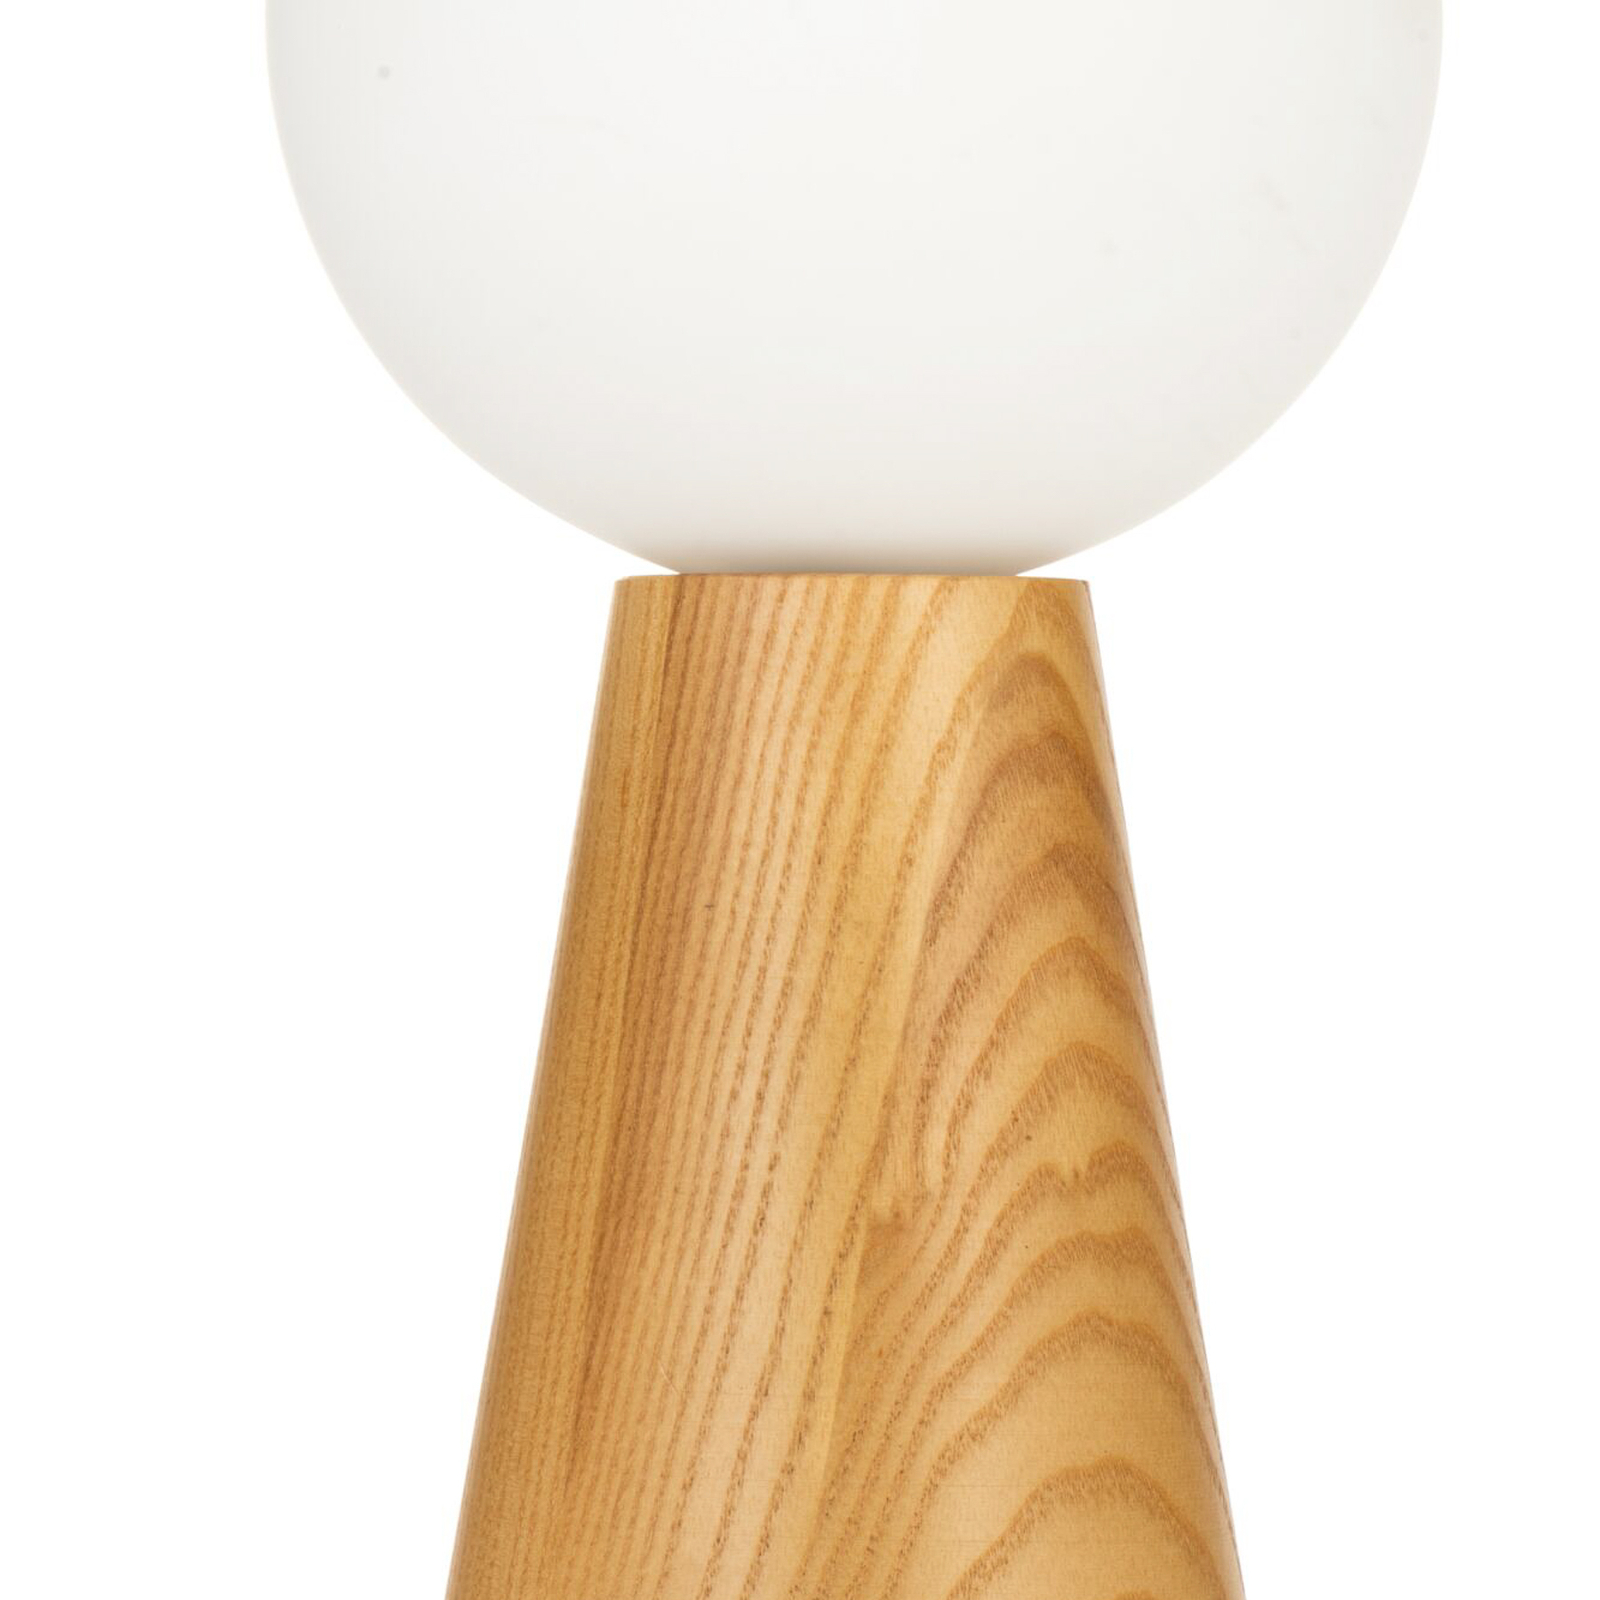 Pauleen Woody Soul lampa stołowa, drewno, szkło